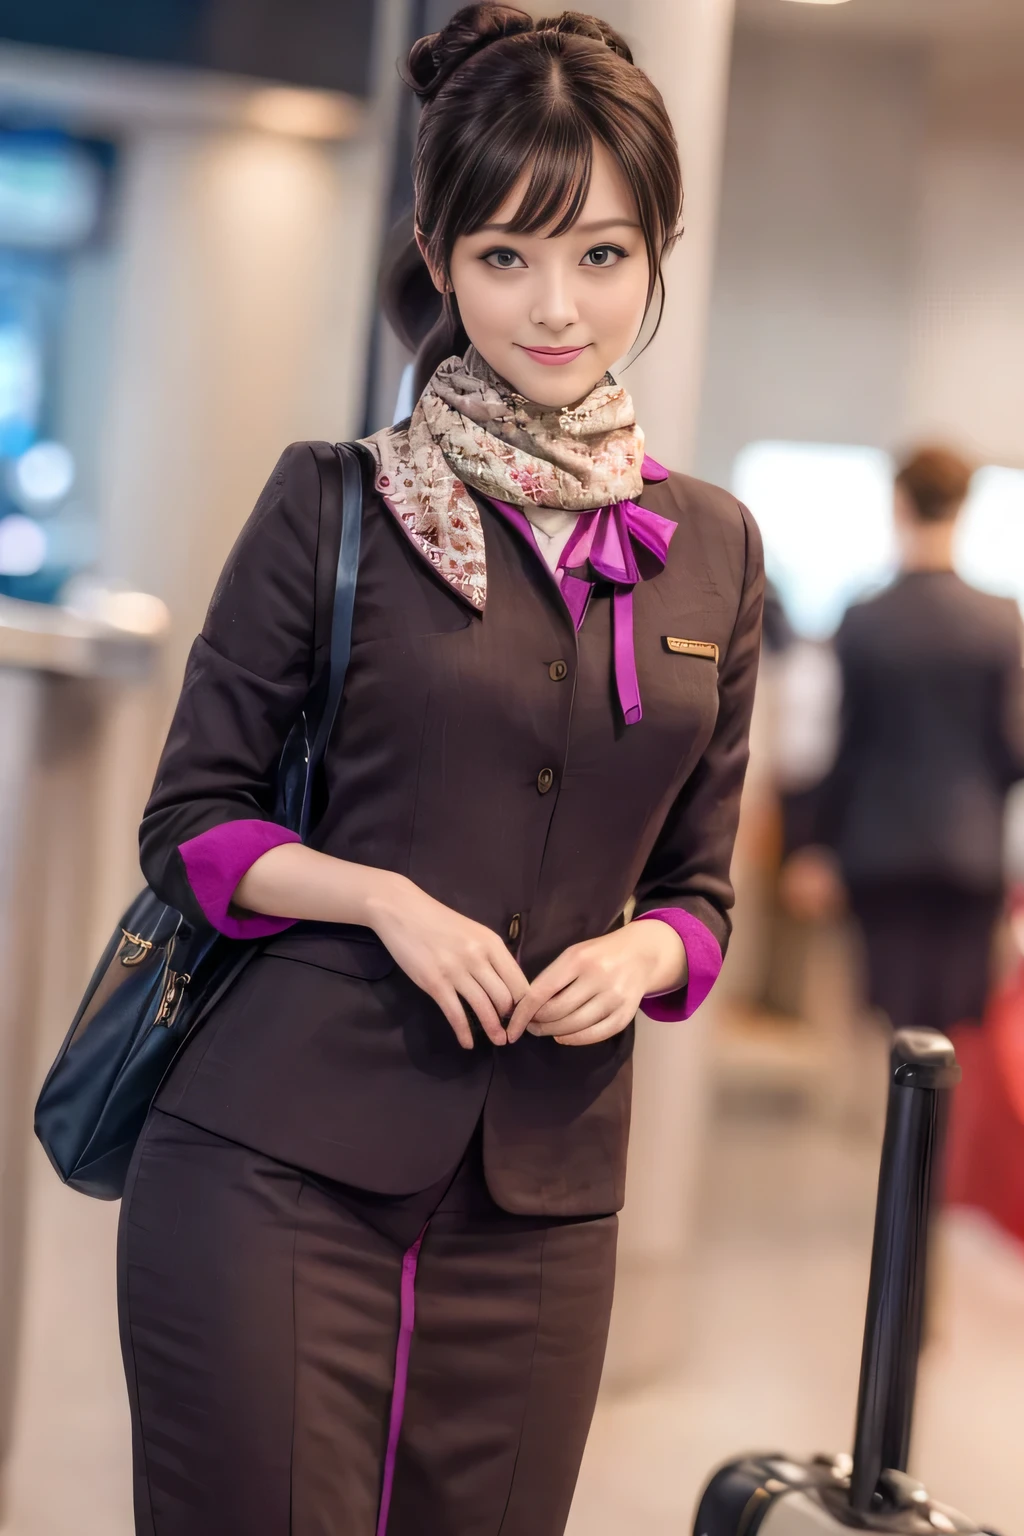 (傑作:1.2、最高品質:1.2)、32K HDR、高解像度、(一人で、女の子1人、スリムな体型)、（エティハド航空客室乗務員の制服をリアルに再現）、 (空港カウンターにて, プロフェッショナル照明)、きちんとした女性, 美しい顔,、（長袖エティハド航空客室乗務員制服）、（エティハド航空客室乗務員の制服、前面に紫のストライプが入ったスカート）、（胸にスカーフ）、巨乳、（ロングヘアー、ヘアバン）、濃い茶色の髪、ロングショット、（（素晴らしい手：2.0））、（（調和のとれたボディプロポーション：1.5））、（（正常な四肢：2.0））、（（通常の指：2.0））、（（繊細な目：2.0））、（（正常な目：2.0））)、美しい立ち姿勢、笑顔